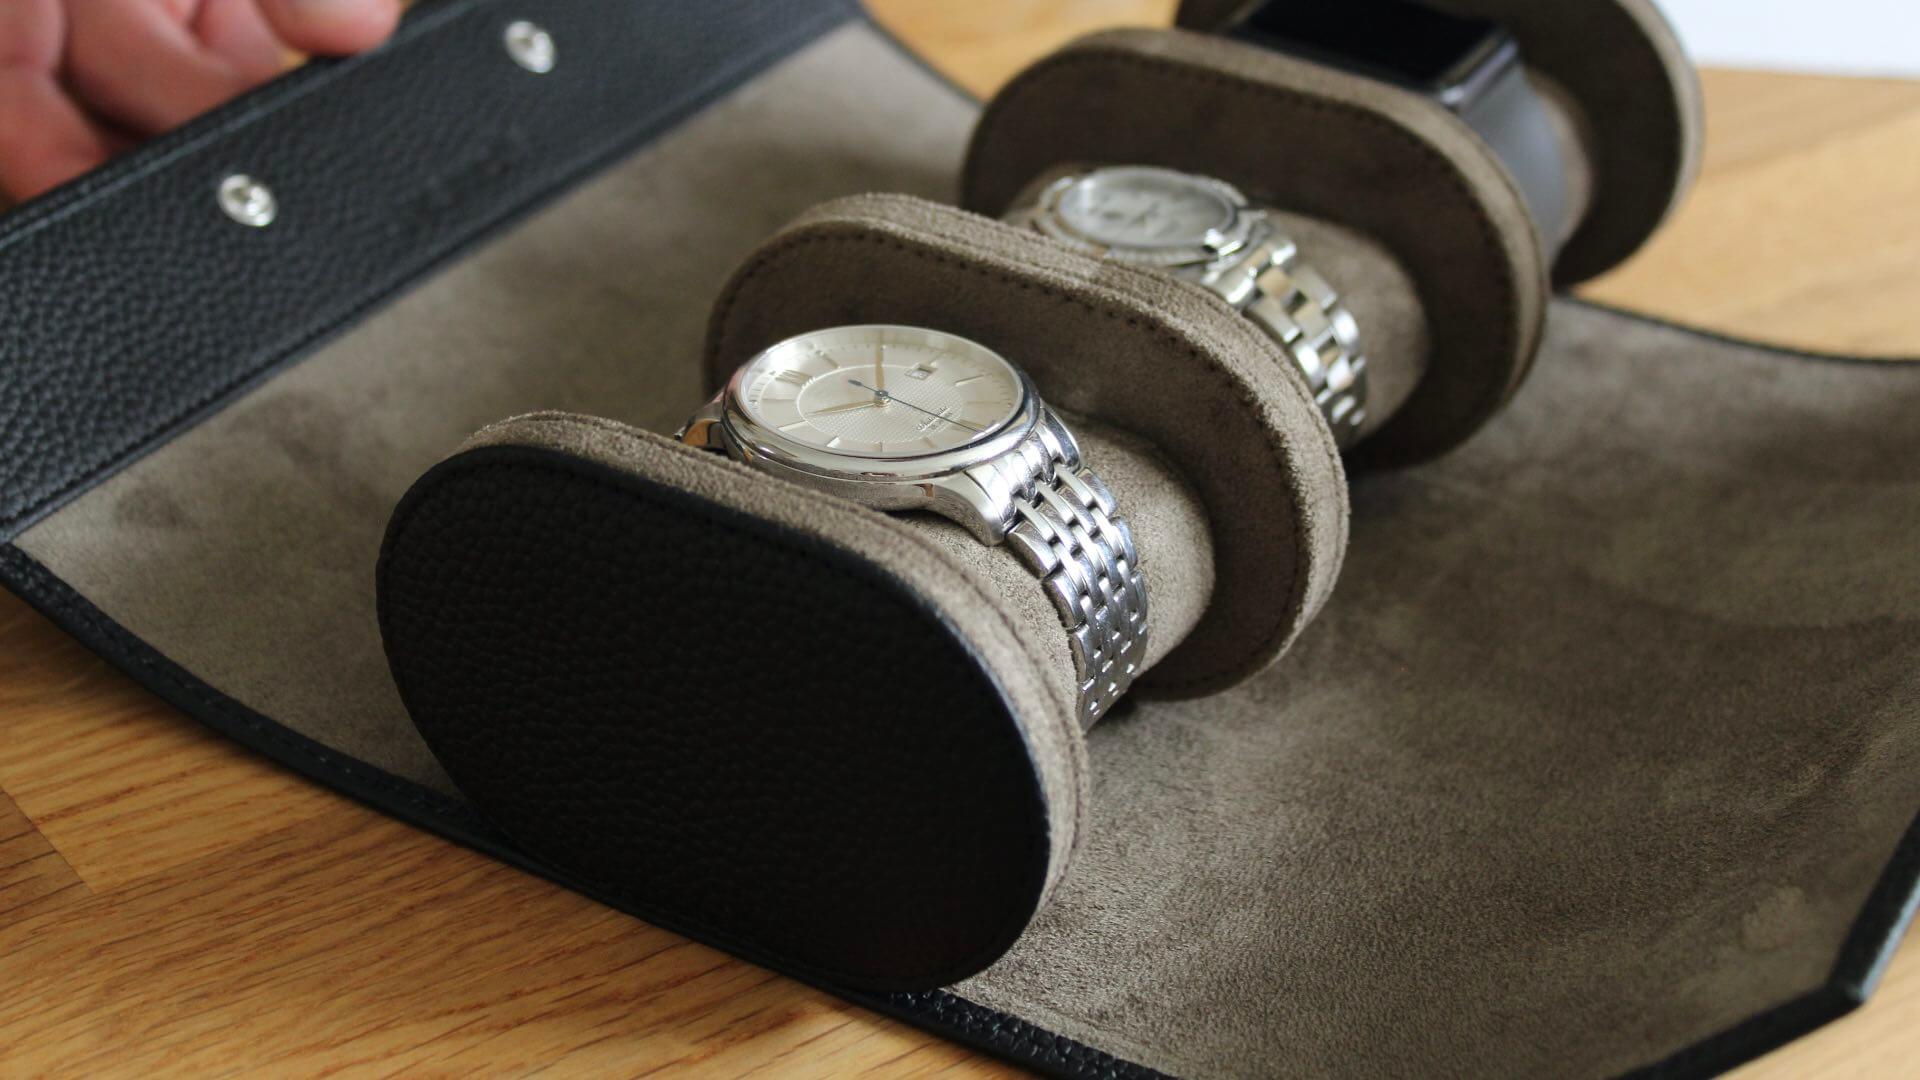 Die Uhrenrolle bietet mit drei separaten Uhreneinsätzen optimalen Schutz vor Beschädigungen.